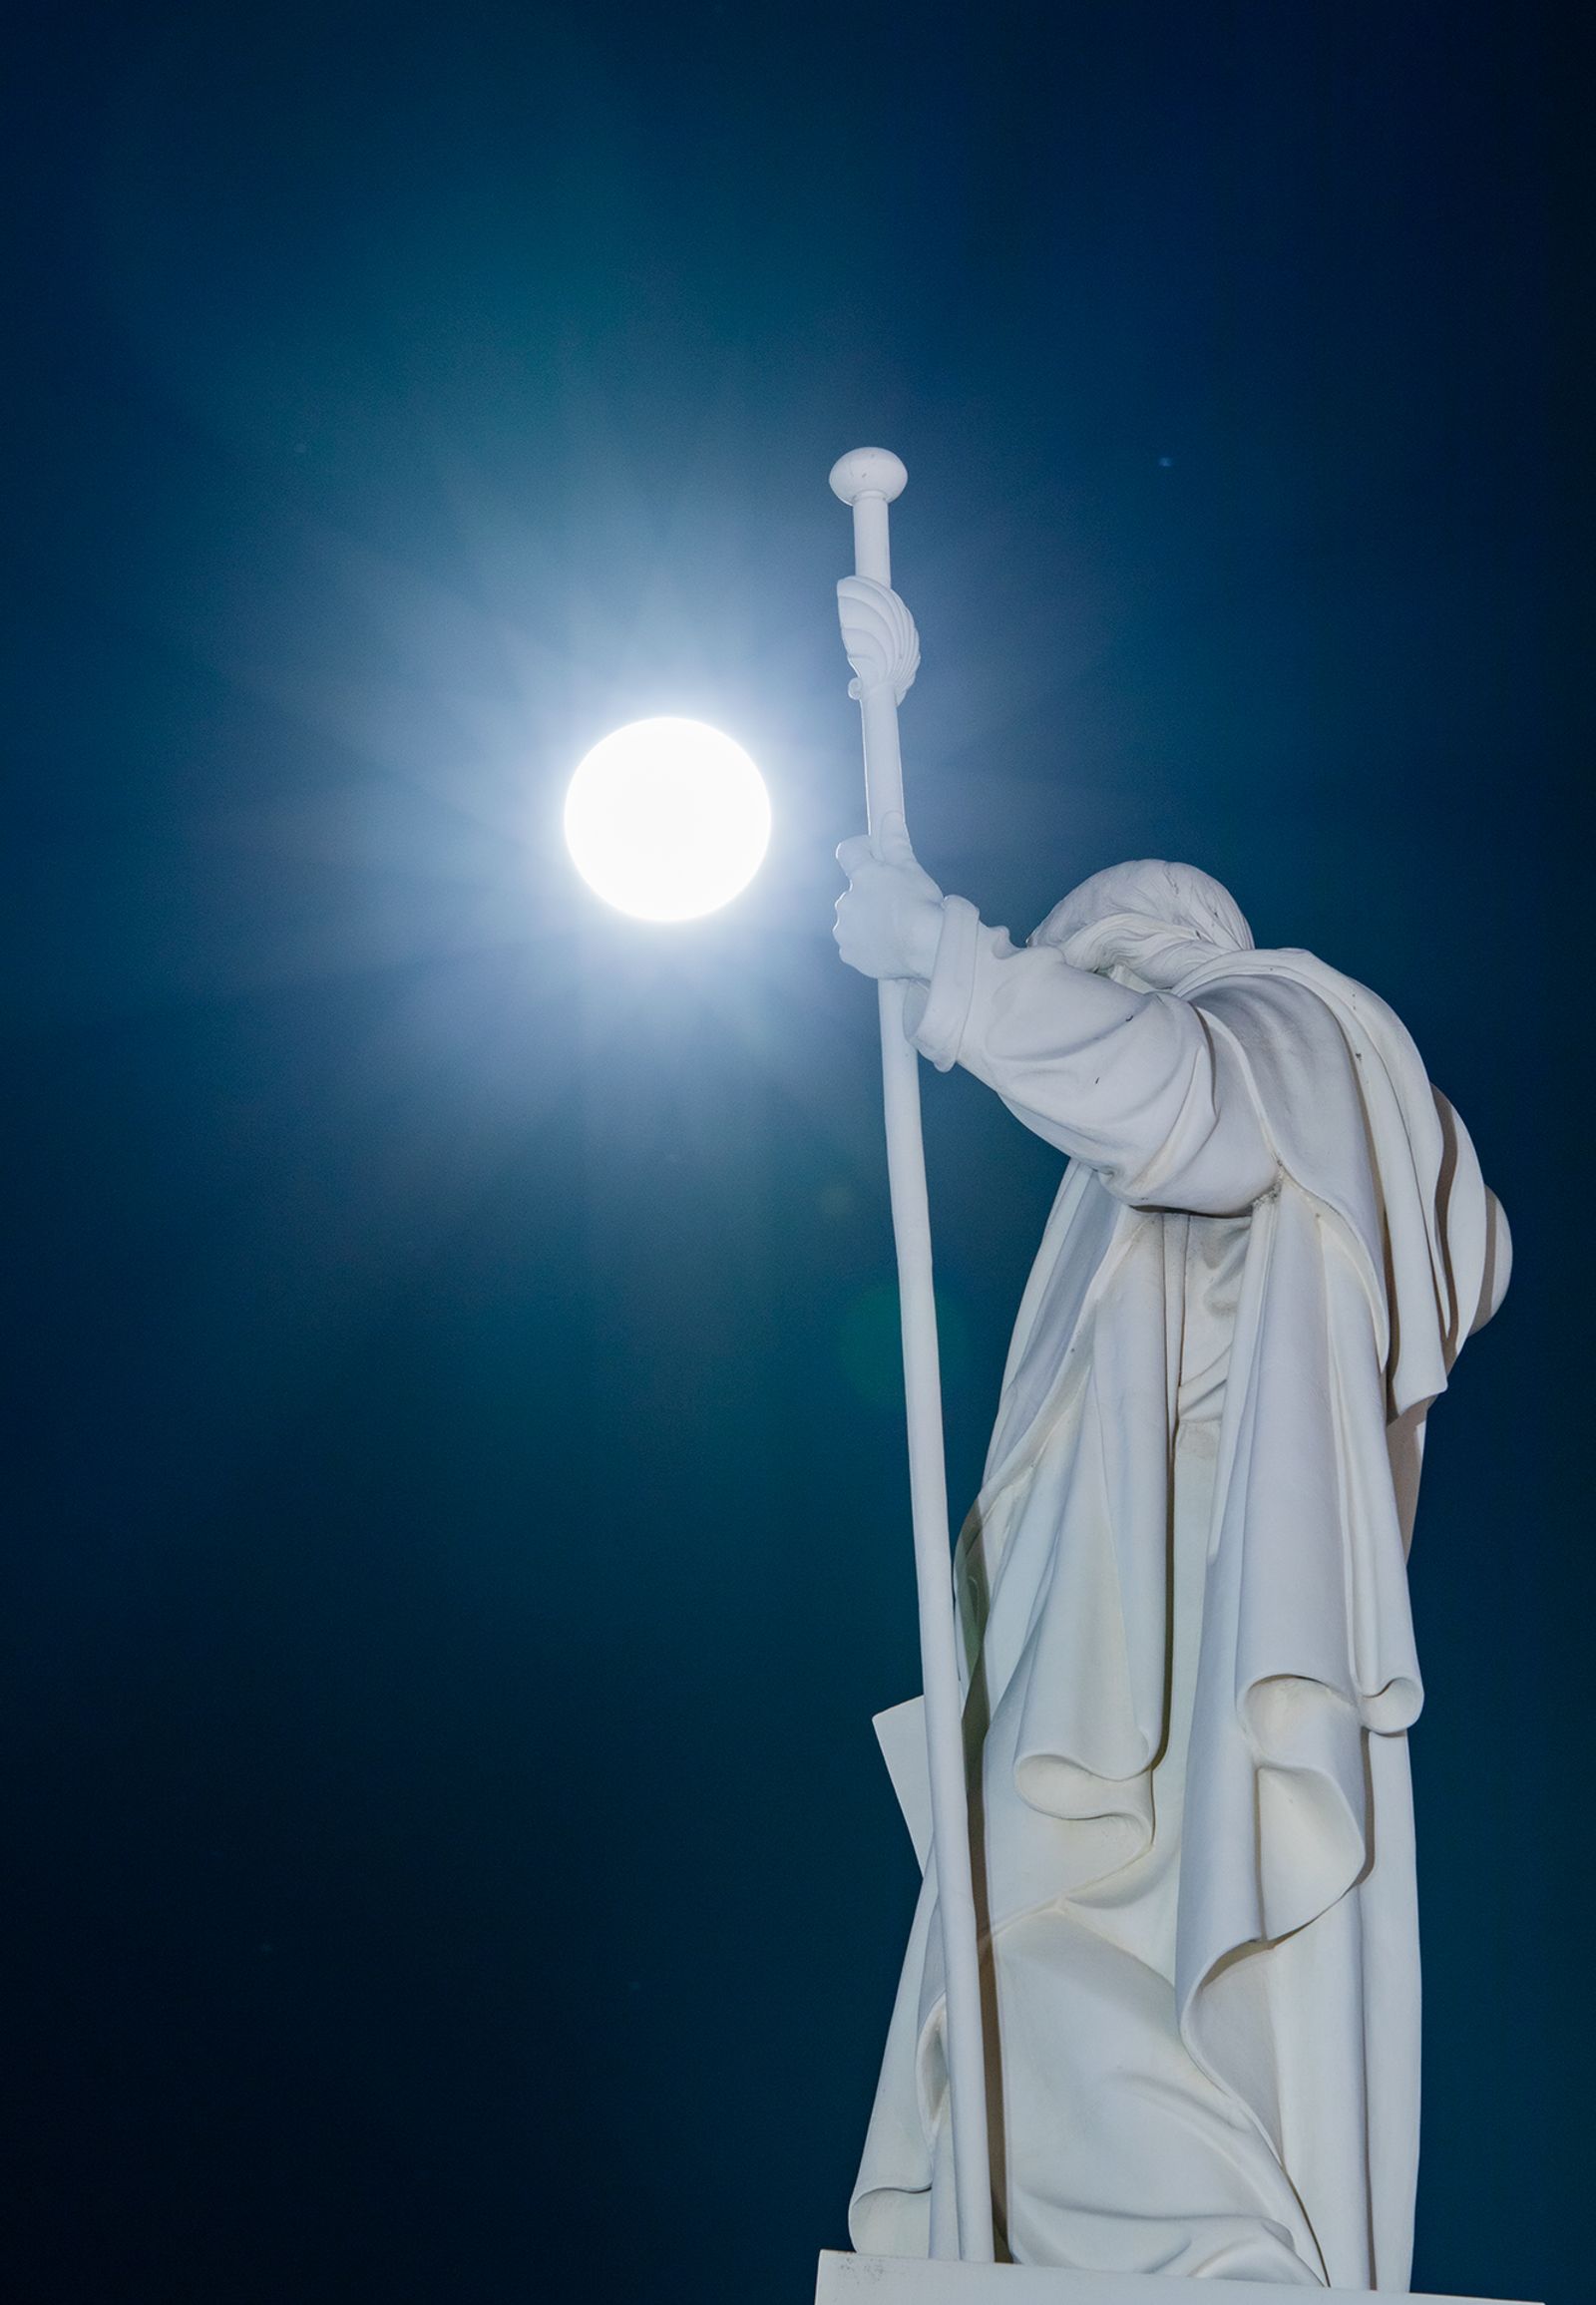 Sauvaa kädessä pitävä Helsingin Tuomiokirkon patsas, sekä valkoisena hehkuva kuu sen takana